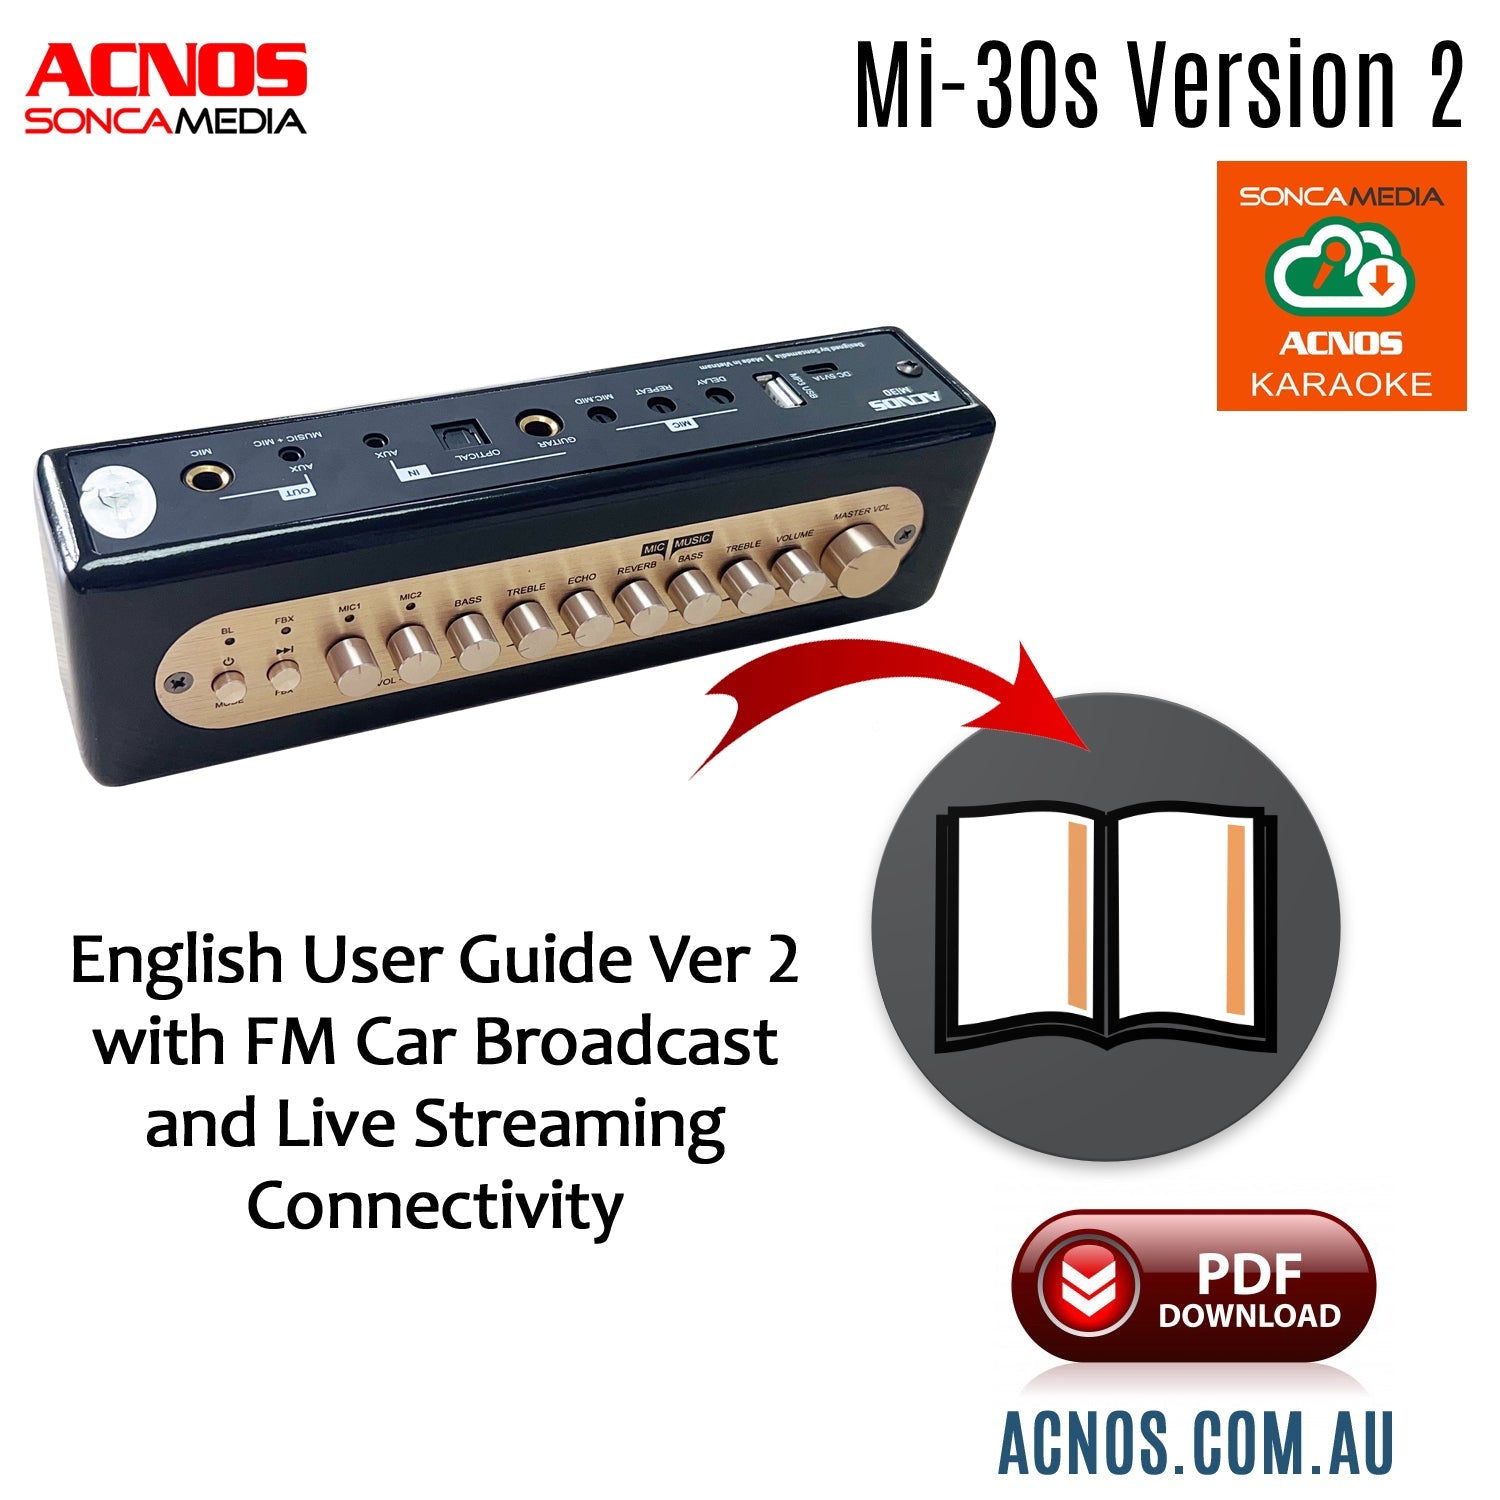 How To Connect Guide - ACNOS Mi - 30s Ver 2.0 Compact Portable Karaoke Mixer - Karaoke Home Entertainment